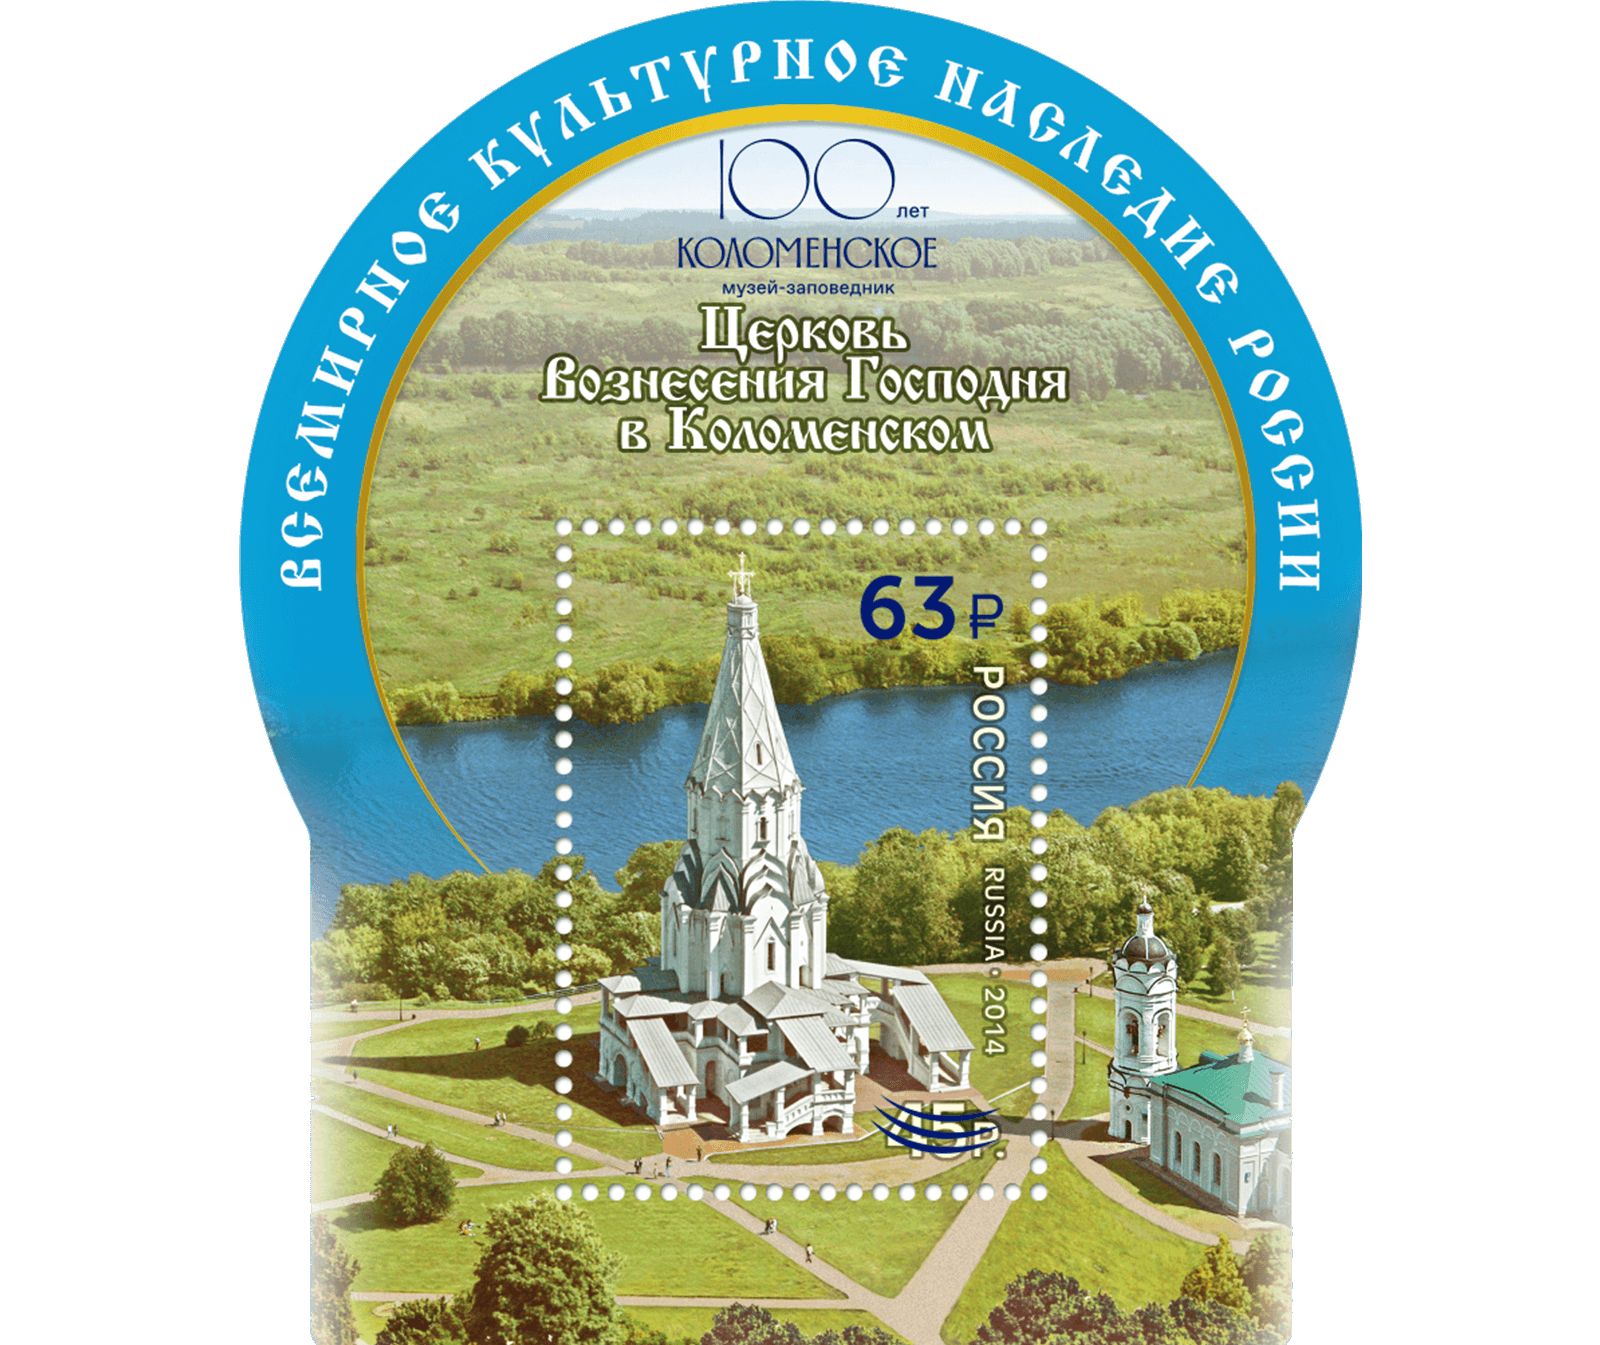 К столетию музея-заповедника «Коломенское» выпущена марка, фото 2